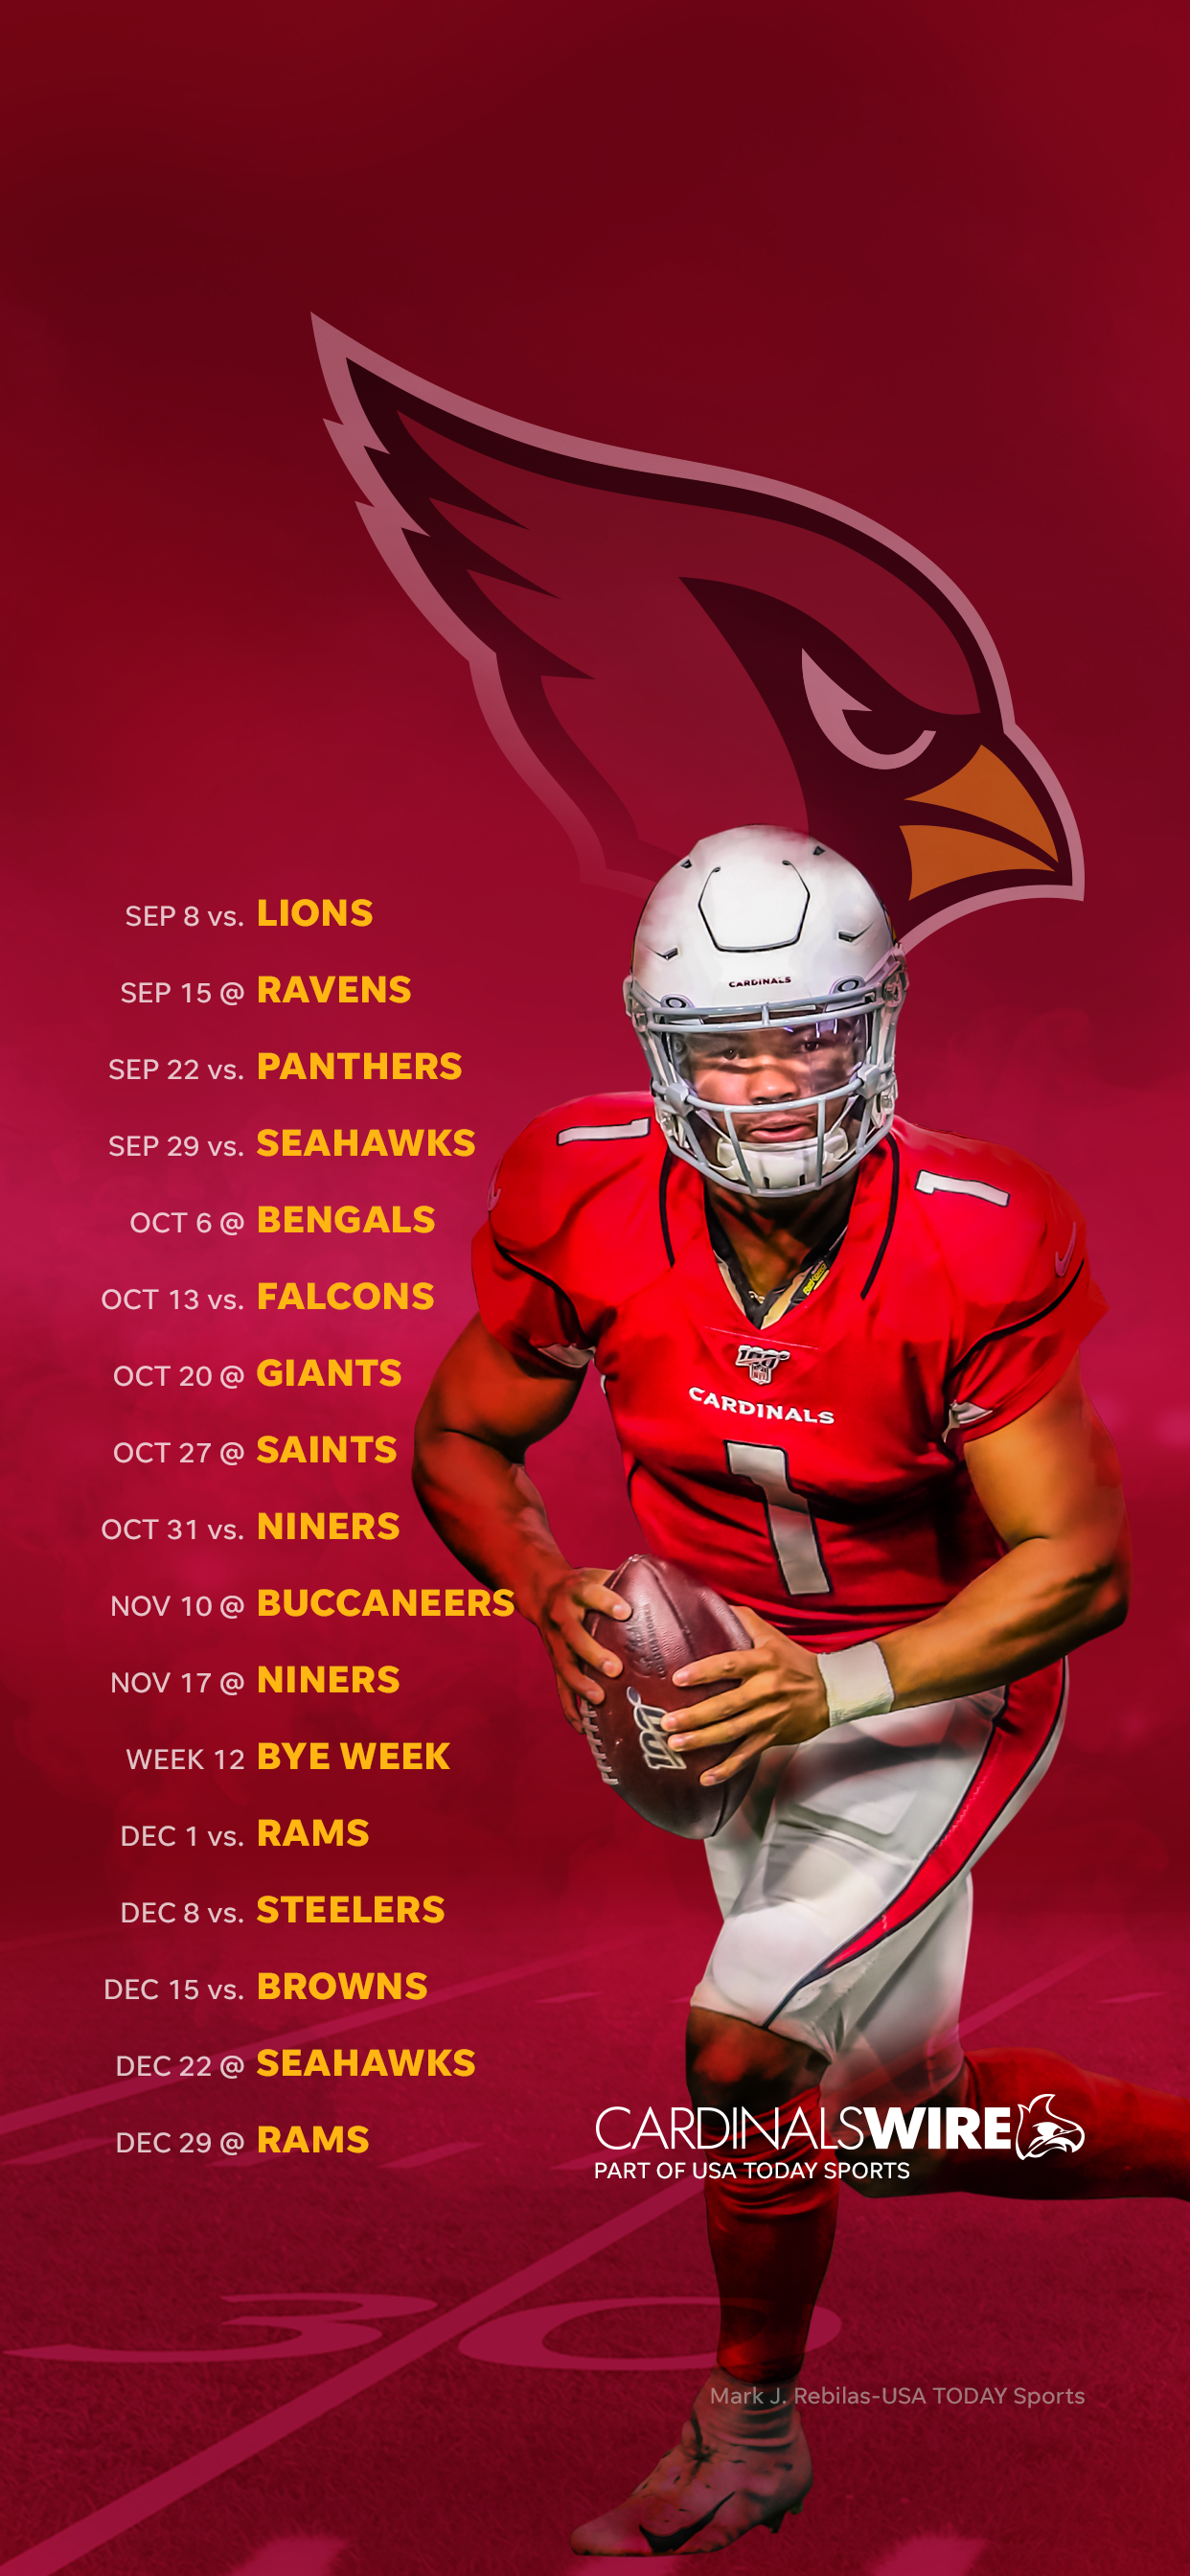 2019 Arizona Cardinals schedule: Downloadable wallpaper